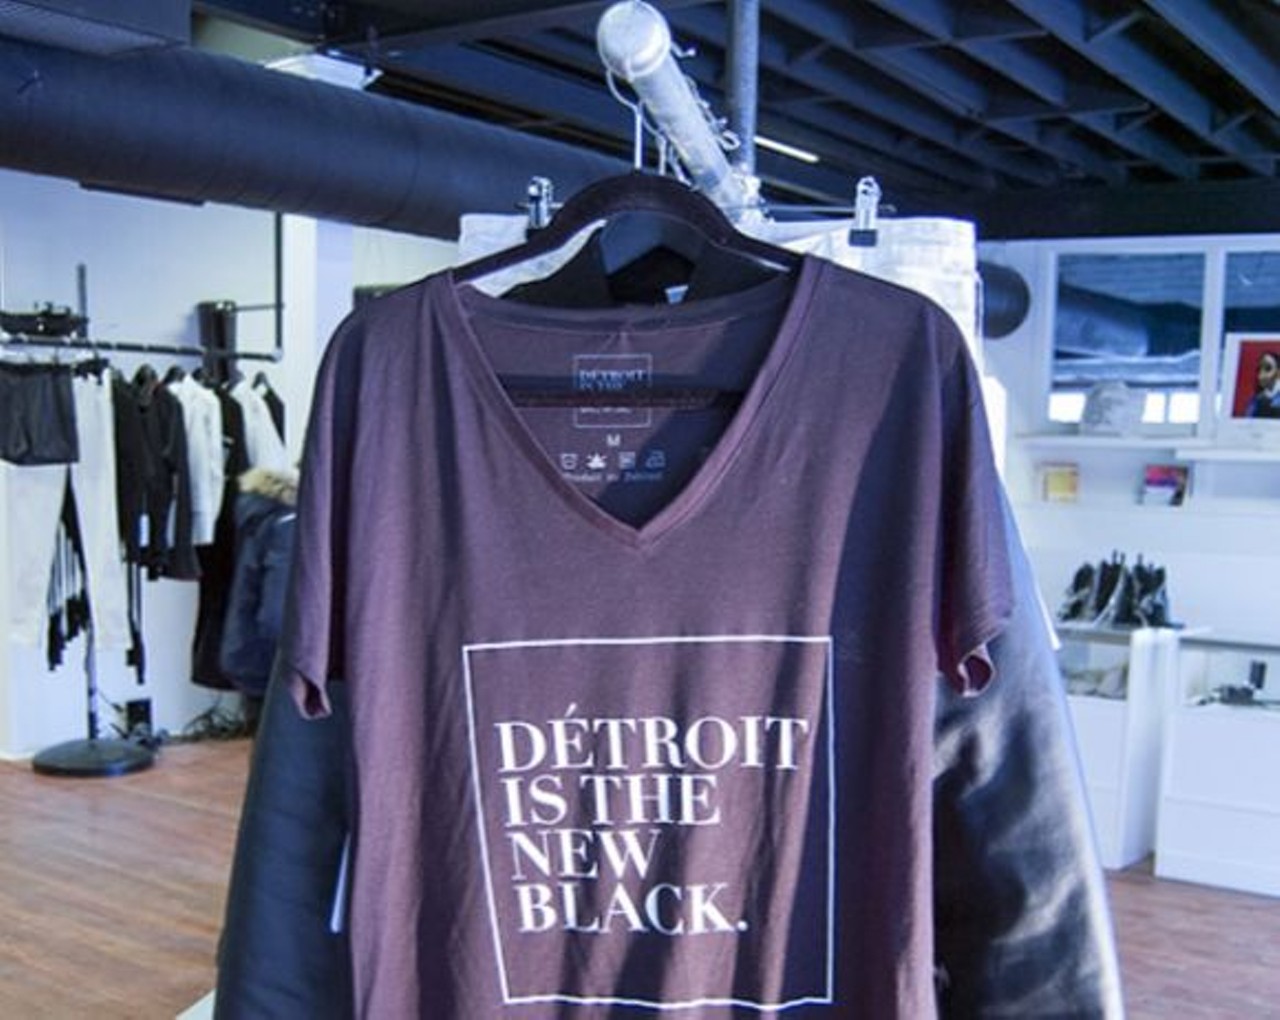 Detroit is the New Black
52 E. Forest Ave.; Detroit; 313-831-8700; detroitisthenewblack.com
&nbsp;